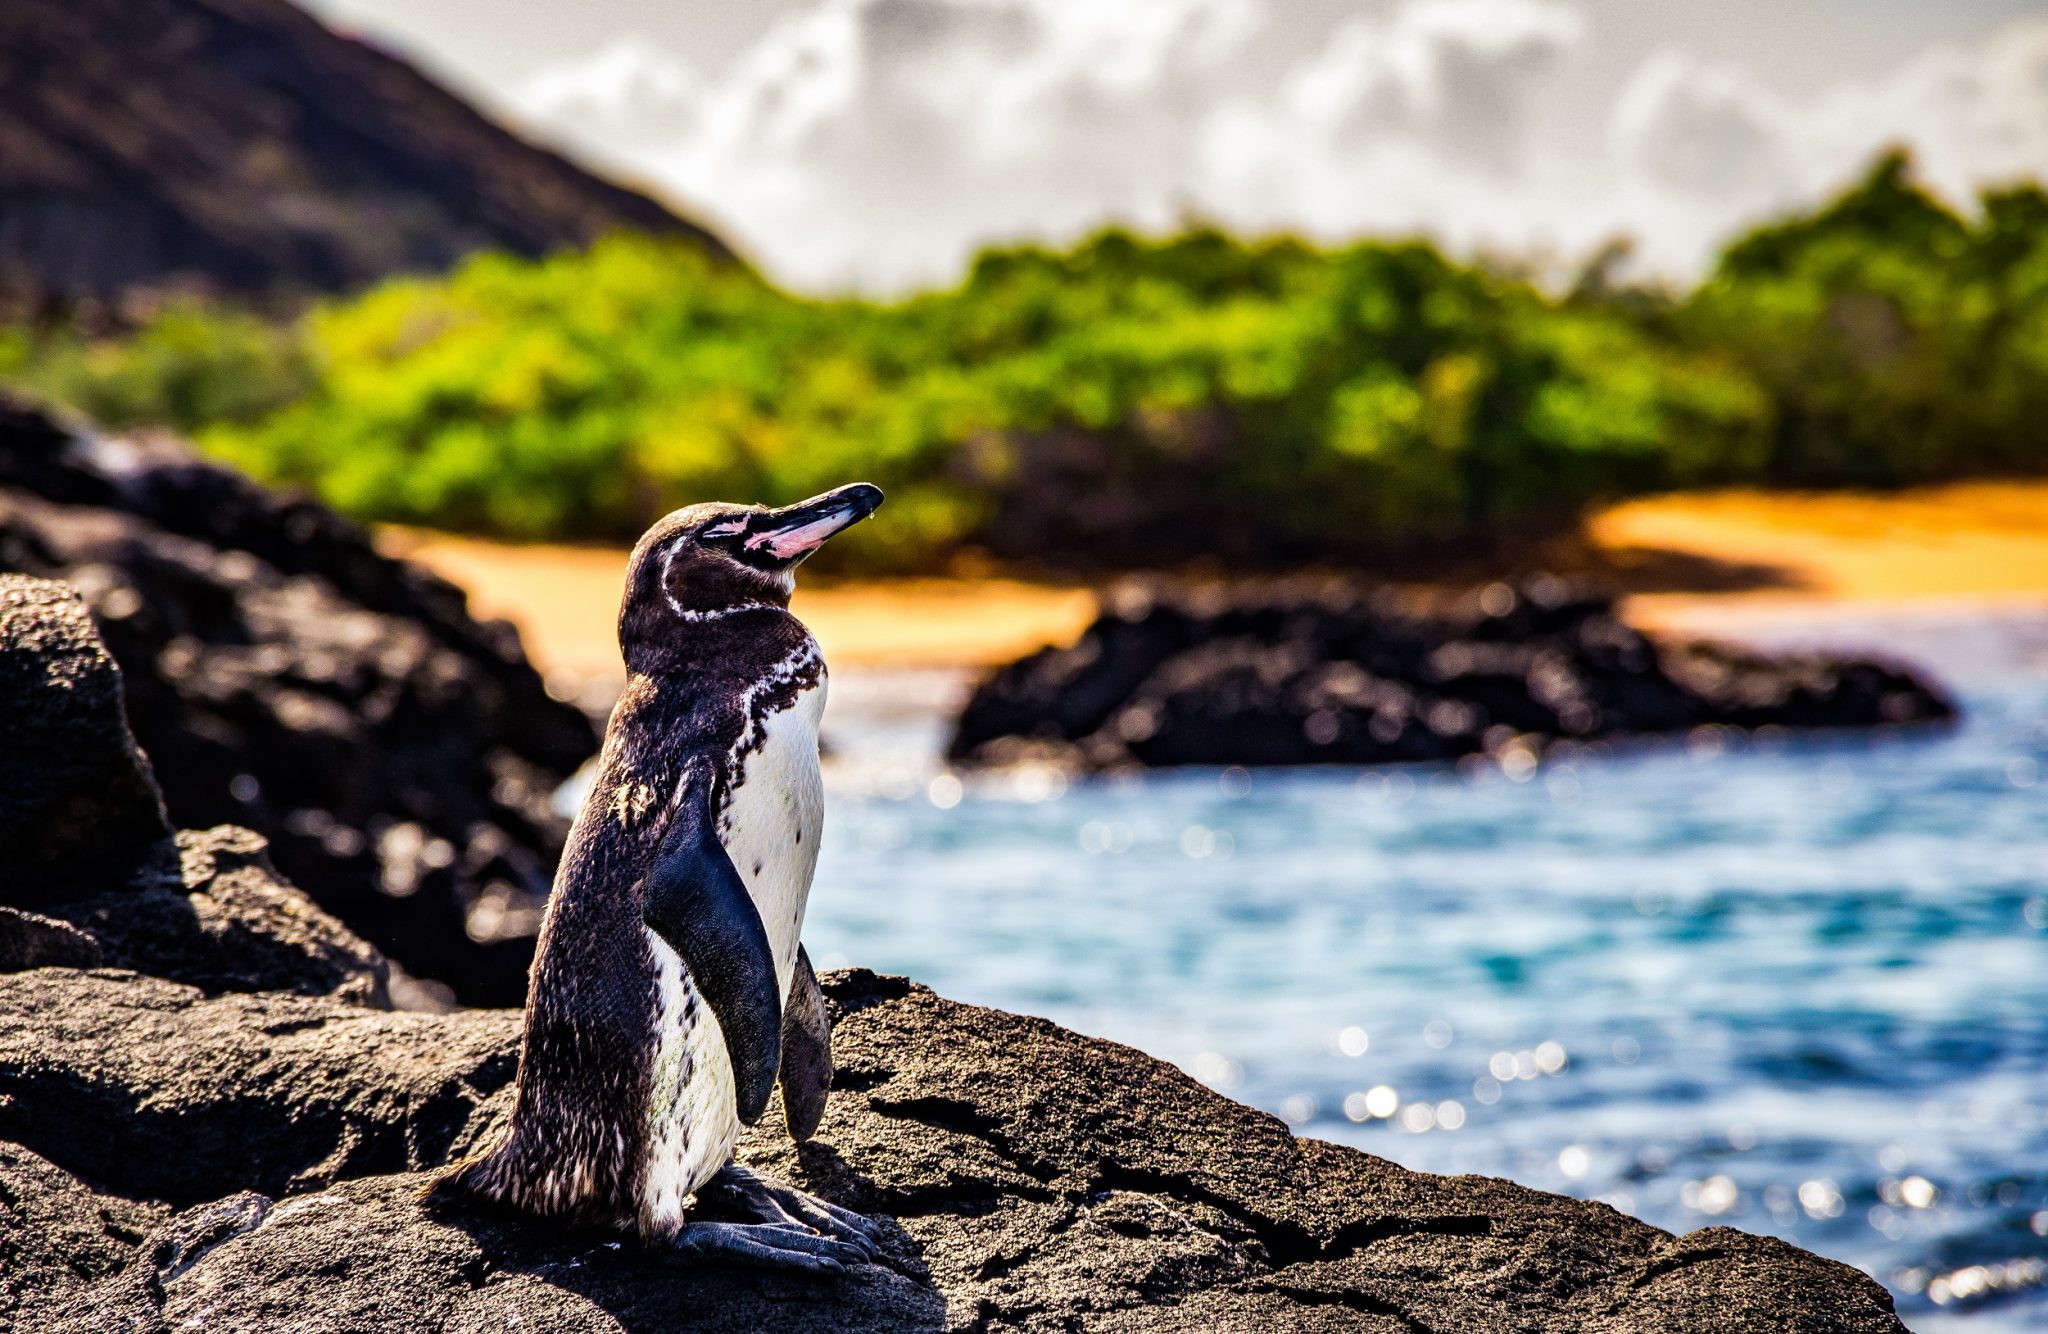 GalapagosPenguinRock_Shutterstock